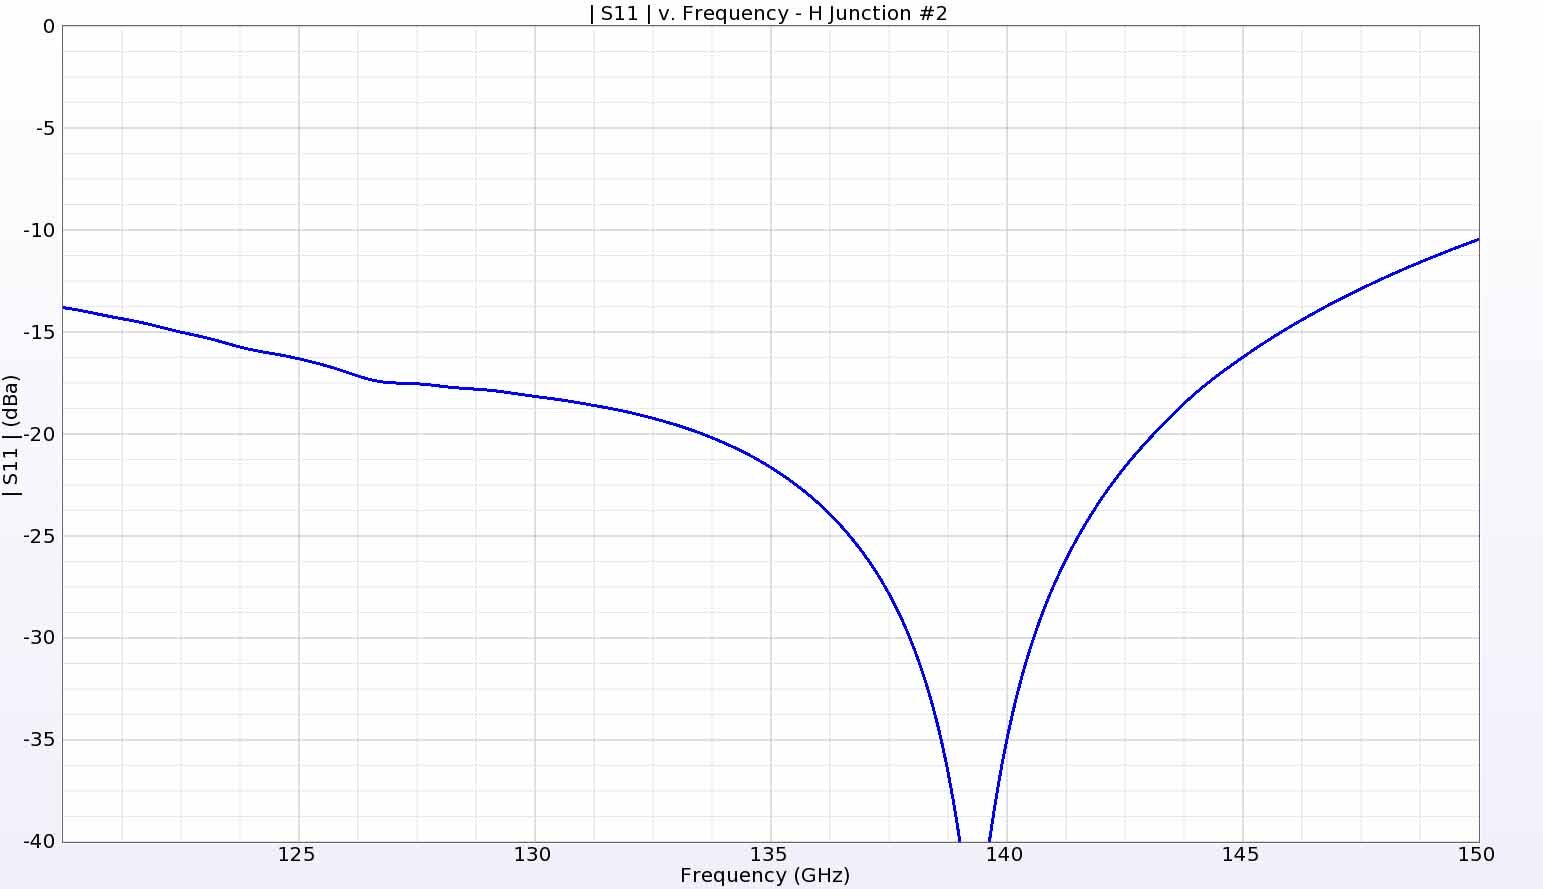 Figura 14: La pérdida de retorno de la unión en H secundaria tiene un buen rendimiento en toda la gama de frecuencias de interés, similar a la de la unión en H primaria.